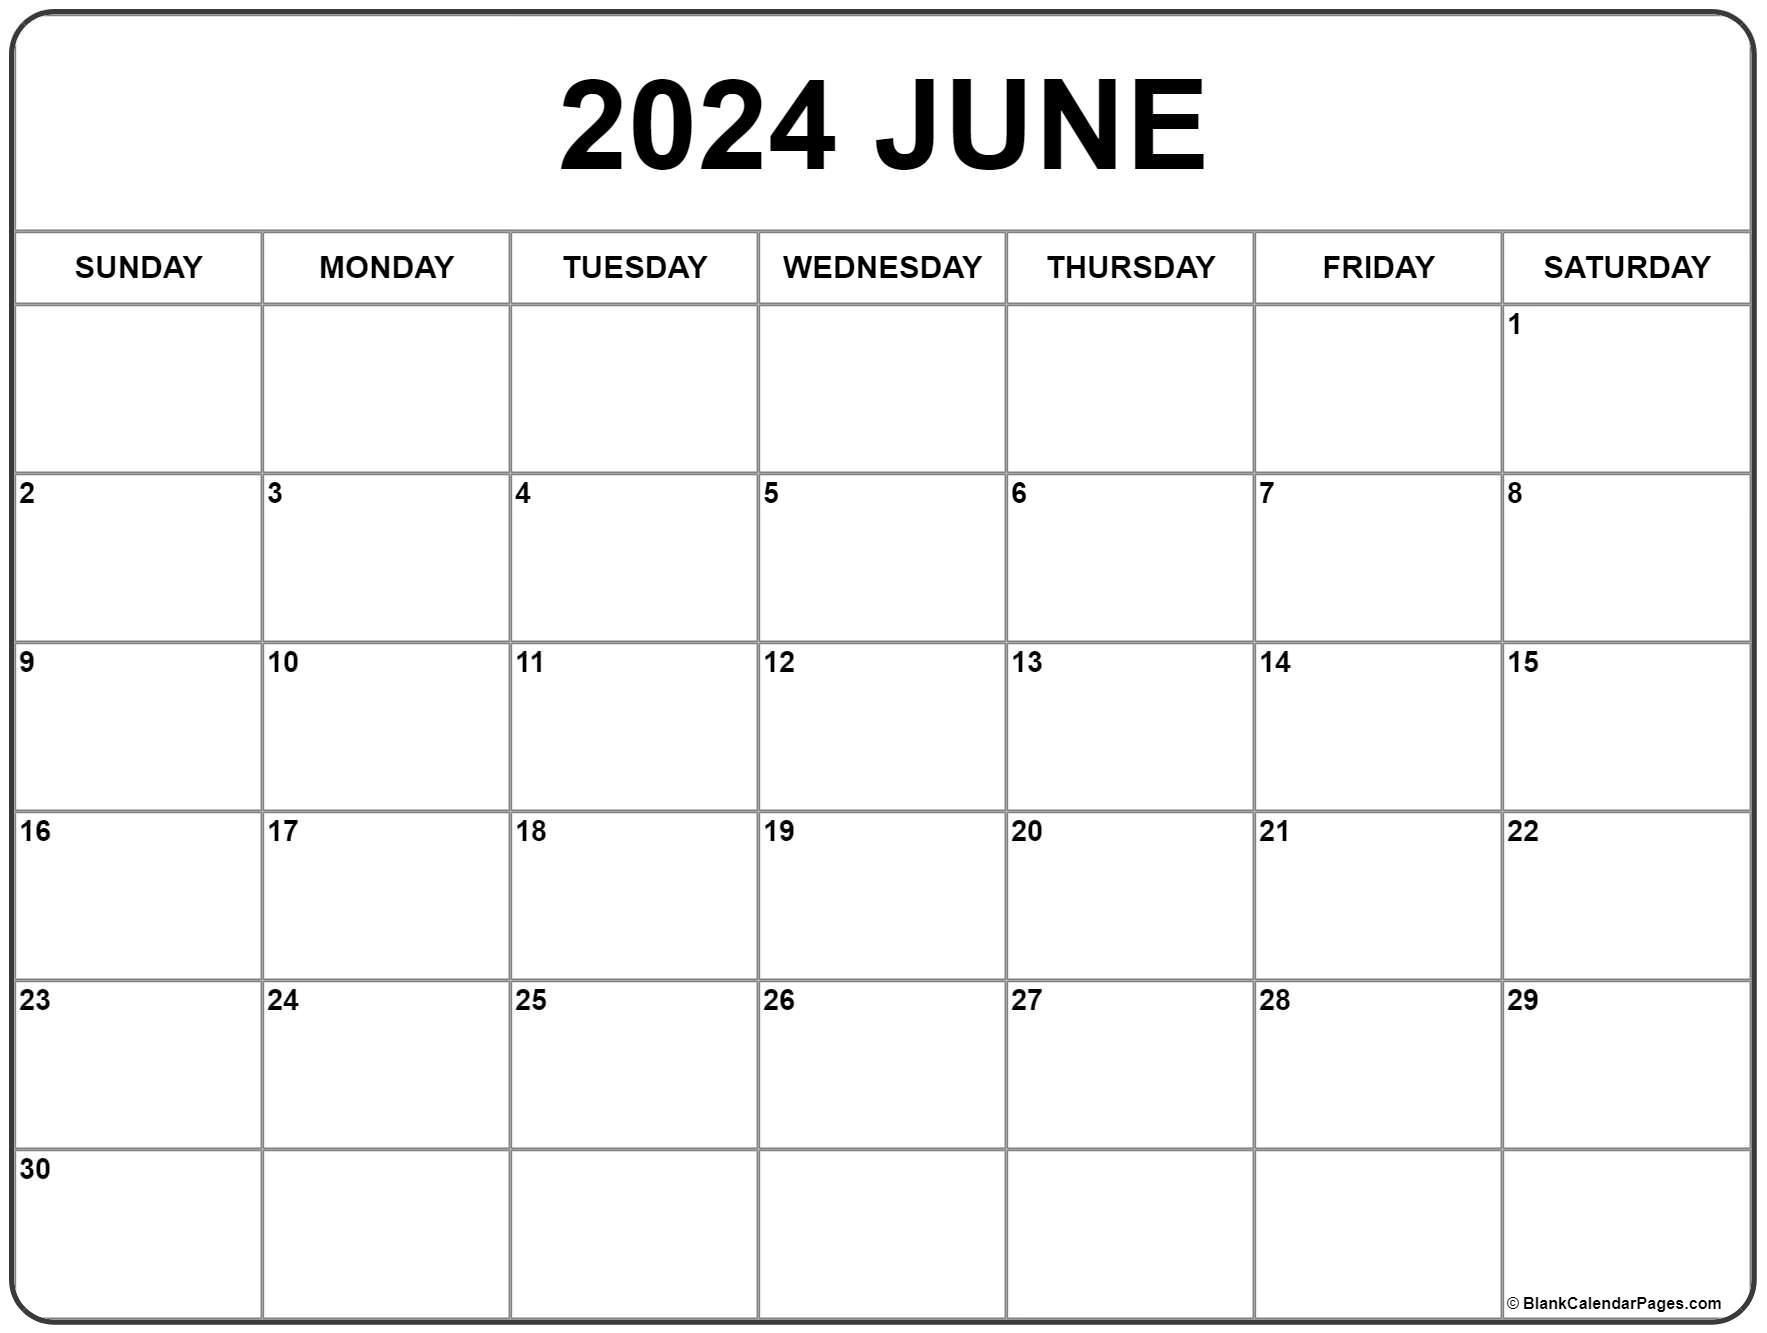 2024 June Calendar Print Out Free Blank 2024 Calendar